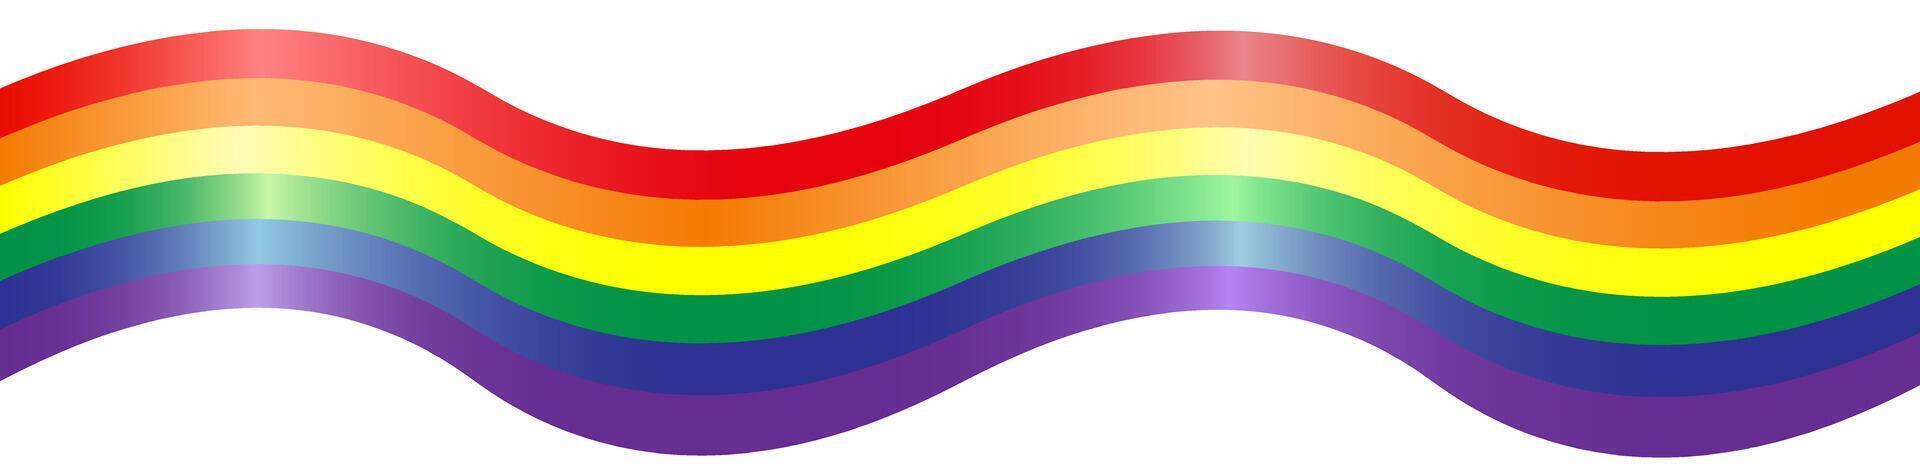 regnbåge. imitation av vattenfärg. ljus vektor illustration.red, orange, gul, grön, blå, lila texturerad Ränder. Gay stolthet HBTQ flagga.